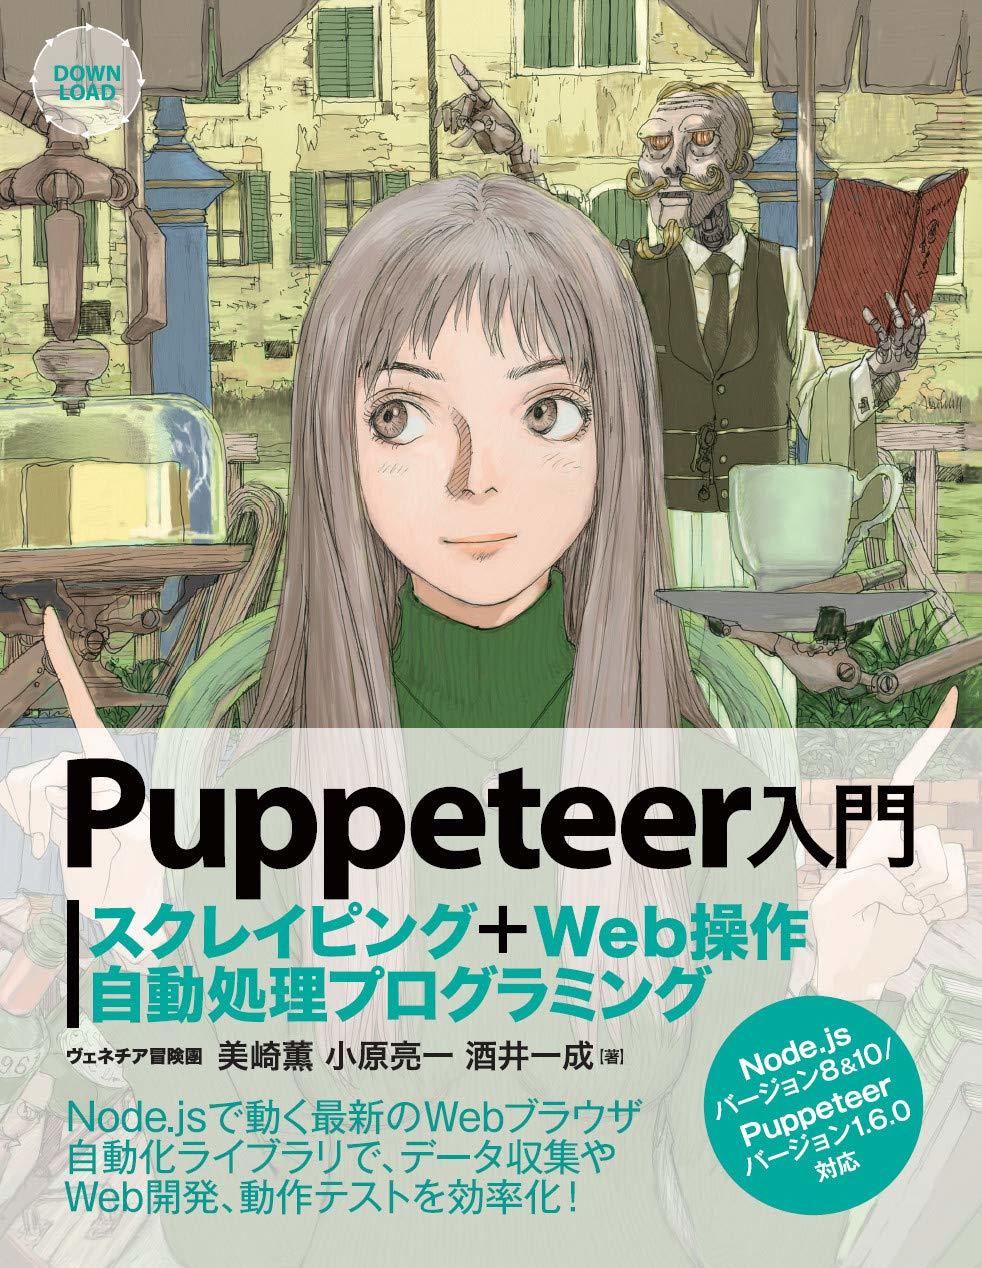 「Puppeteer入門 スクレイピング+Web操作自動処理プログラミング」

鶴田謙二の...